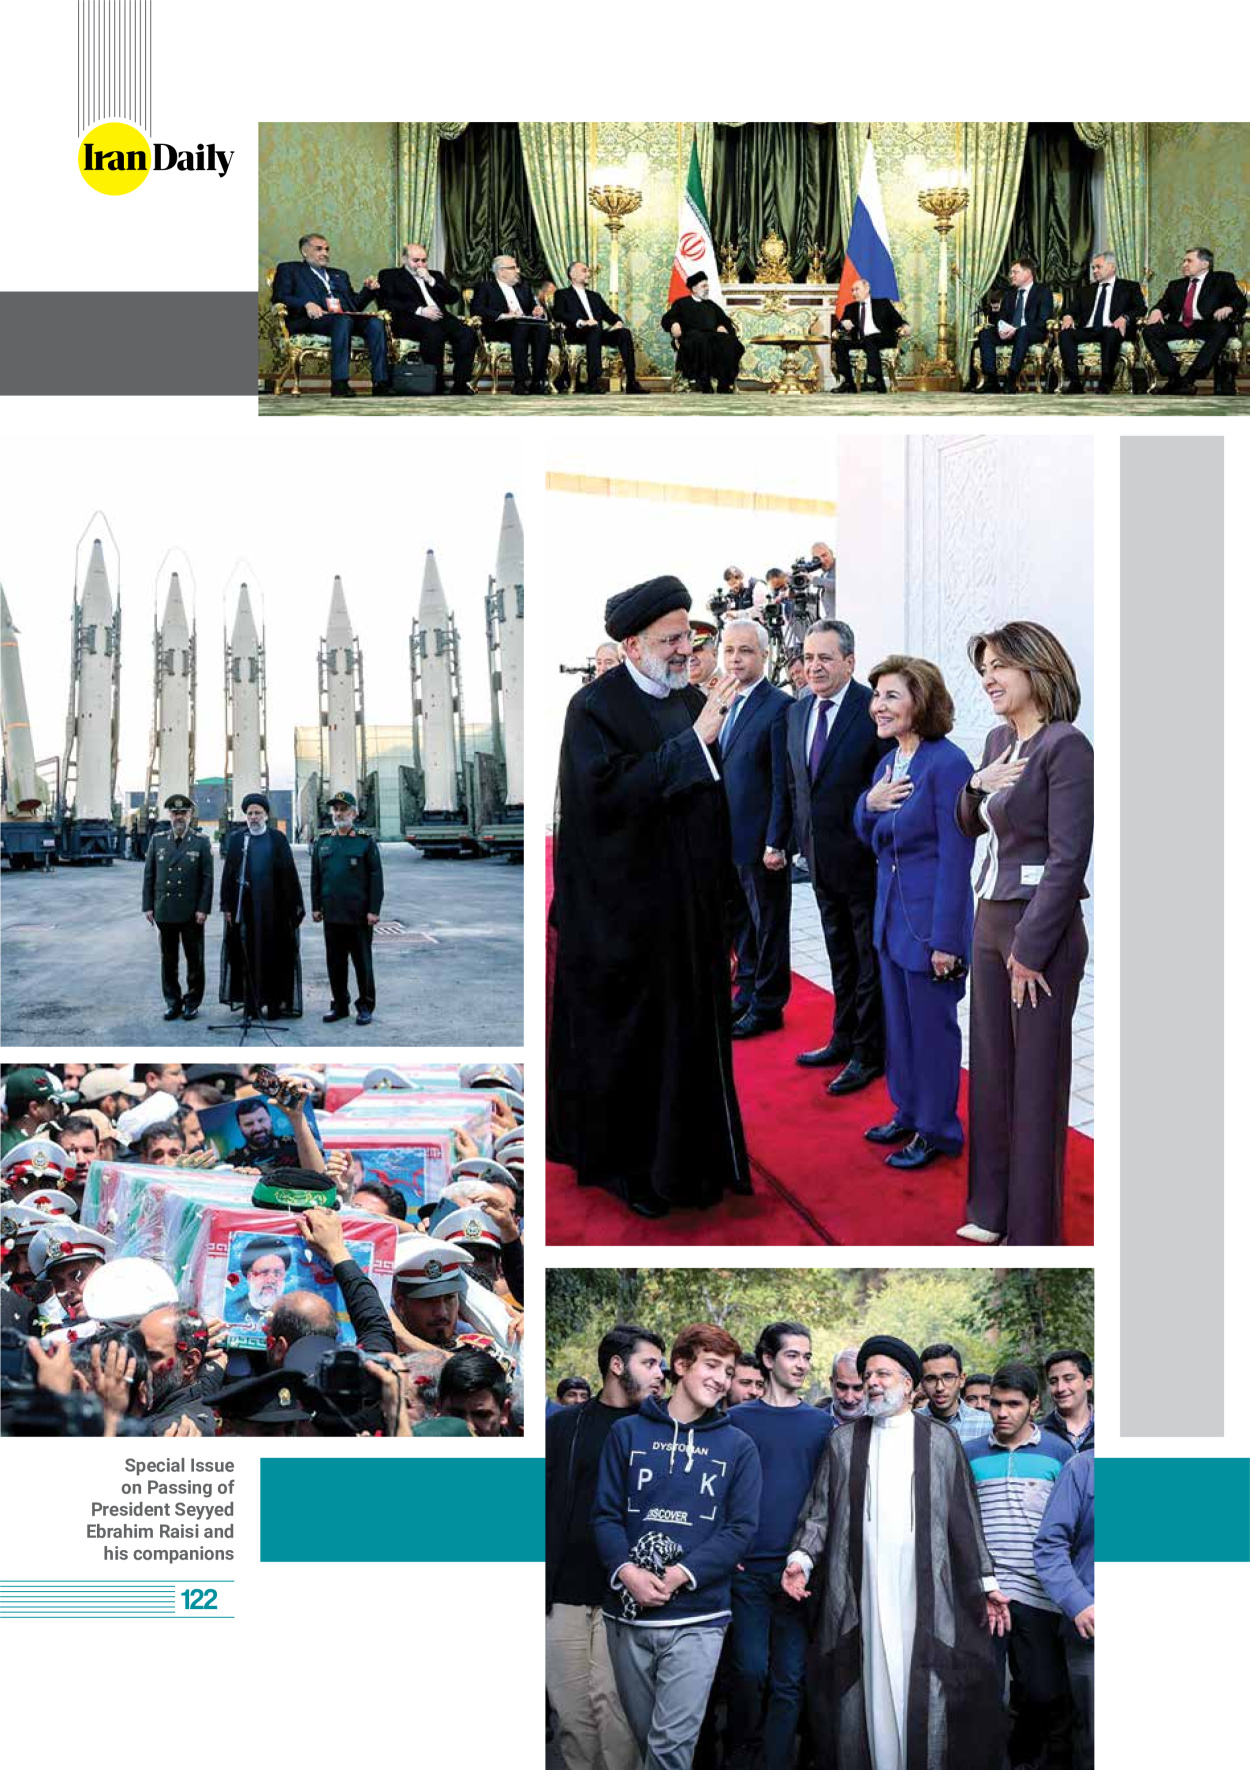 روزنامه ایران - ویژه نامه وِزه نامه چهلم شهید رییسی( انگلیسی) - ۱۷ تیر ۱۴۰۳ - صفحه ۱۲۲